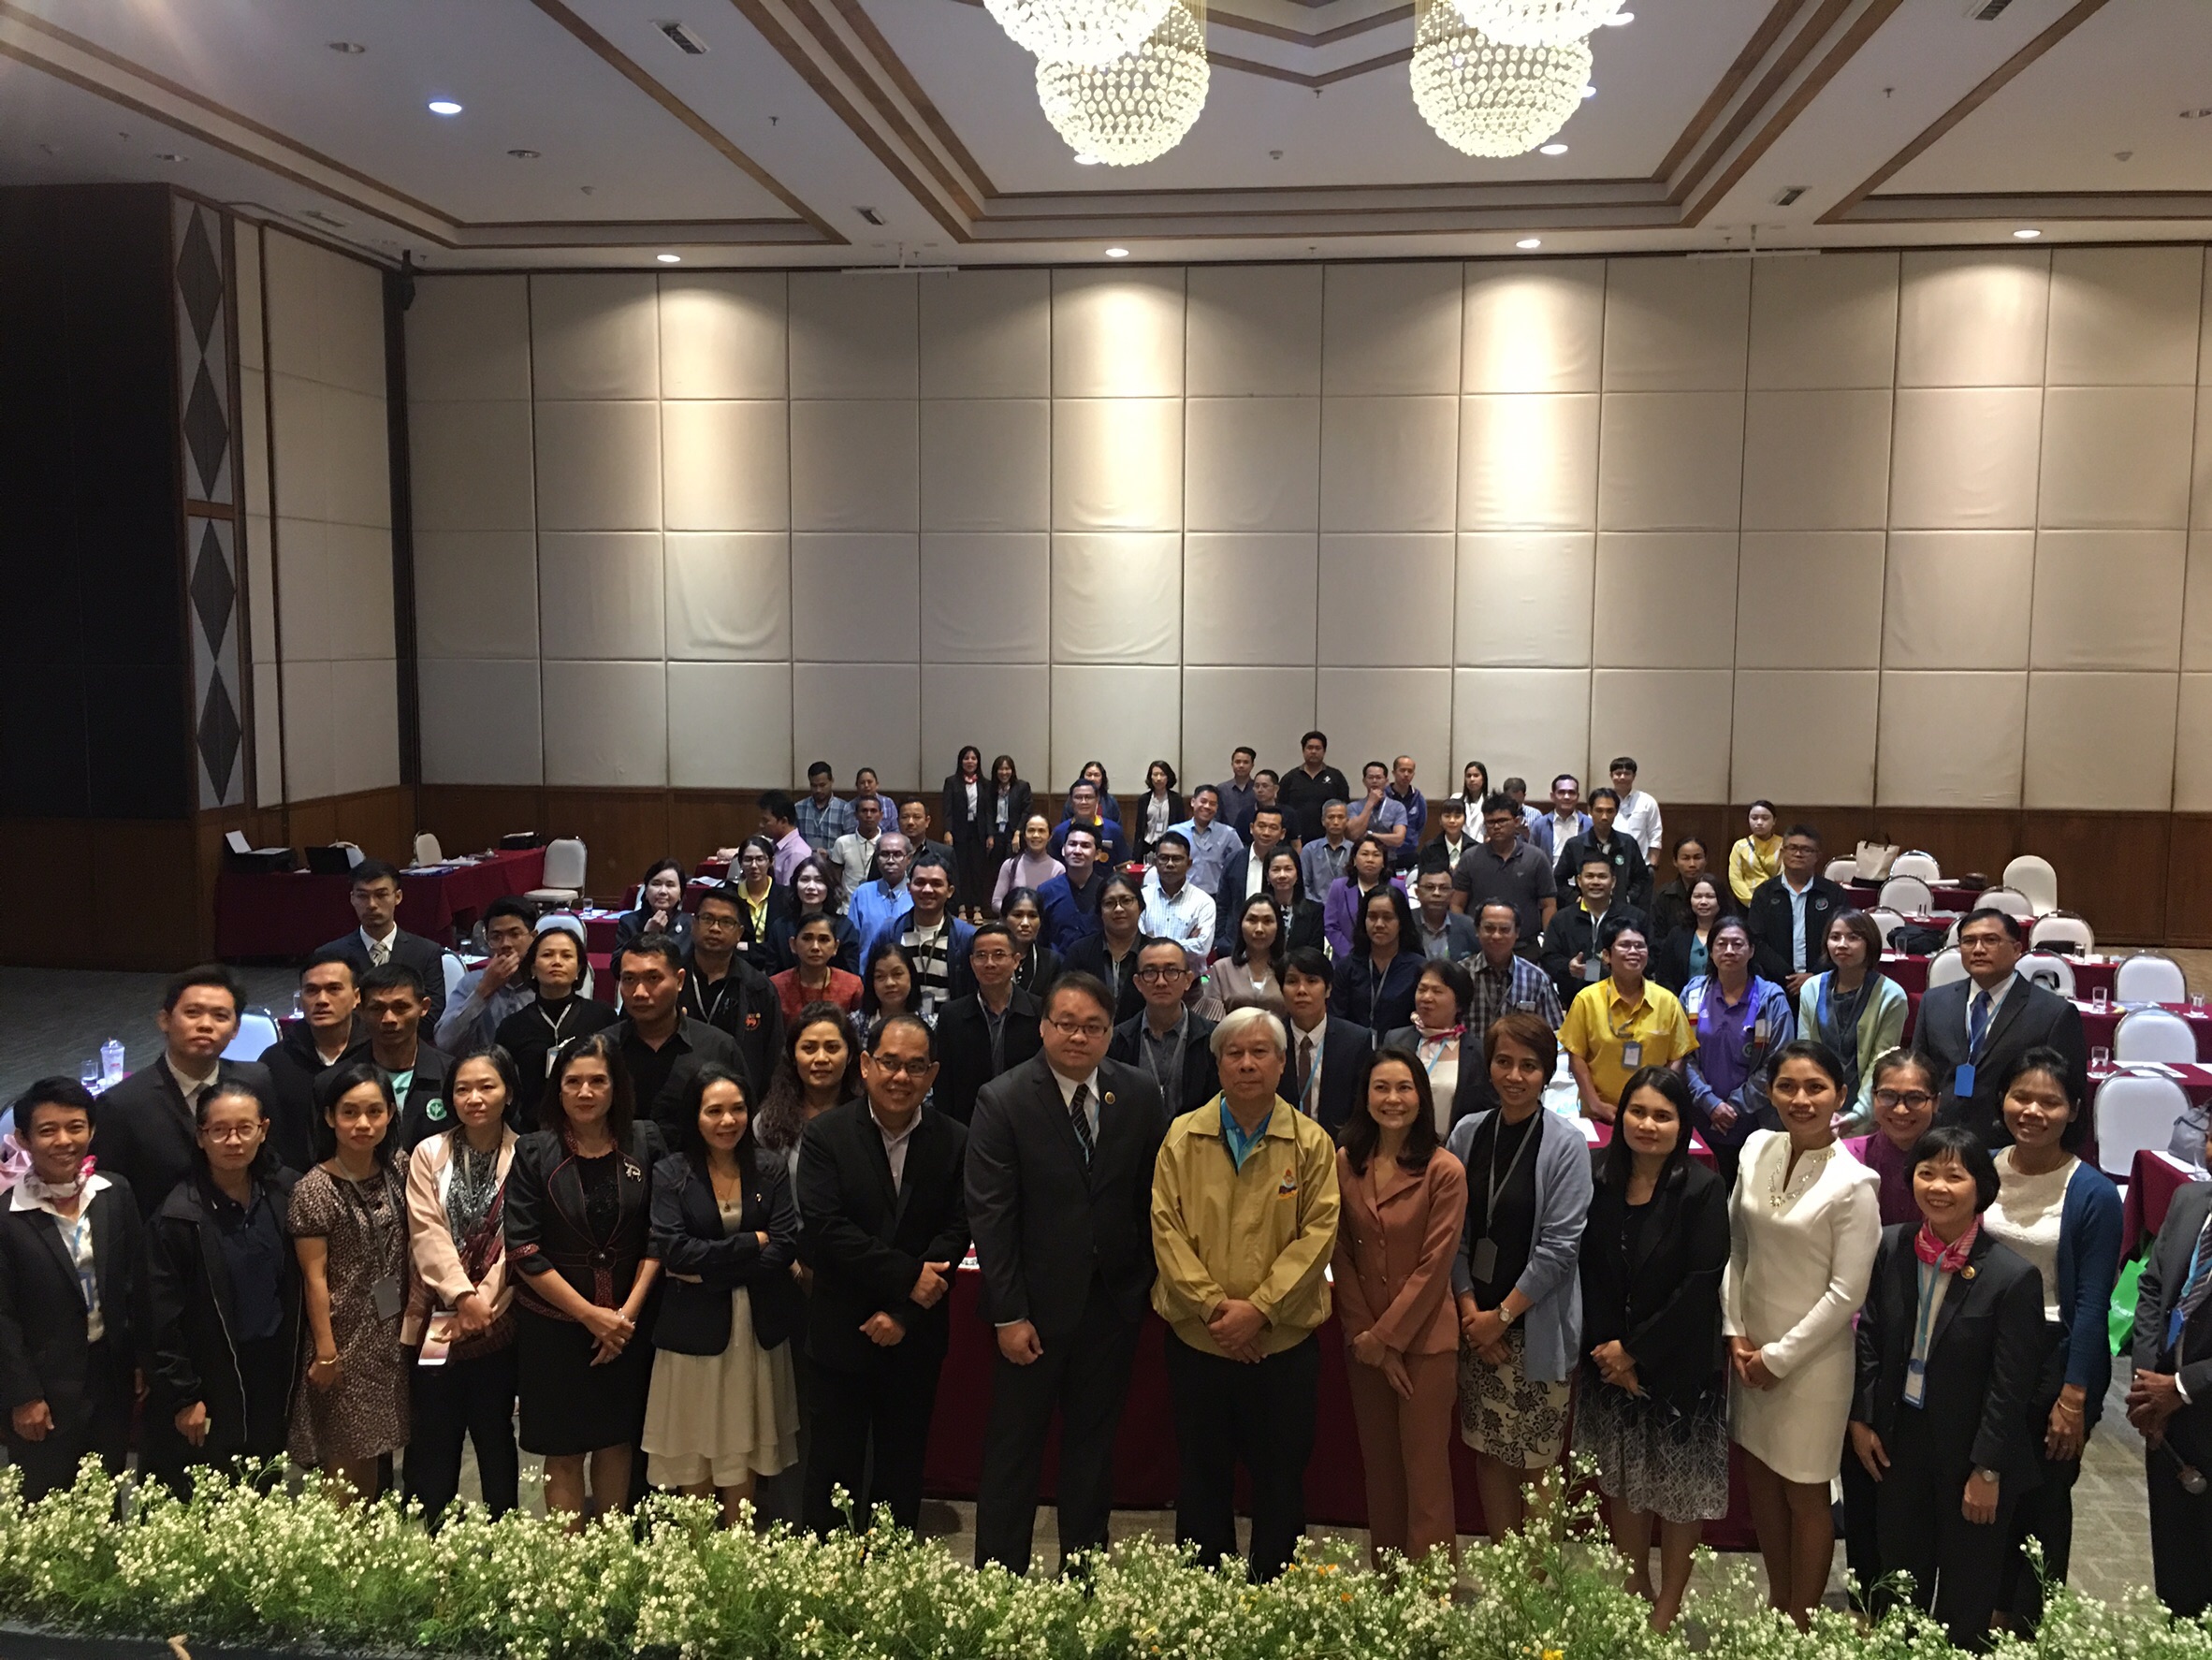 ประชุมวิชาการร่วมกับรังสีการแพทย์แห่งประเทศไทย ครั้งที่17 27-29 พ.ย. - พร้อมเข้าเยี่ยมและให้กำลังใจหน่วยงานรังสีวิทยาในพื้นที่จังหวัดอุบลราชธานีระหว่างวันที่ 25-26 พฤศจิกายน 2562 26